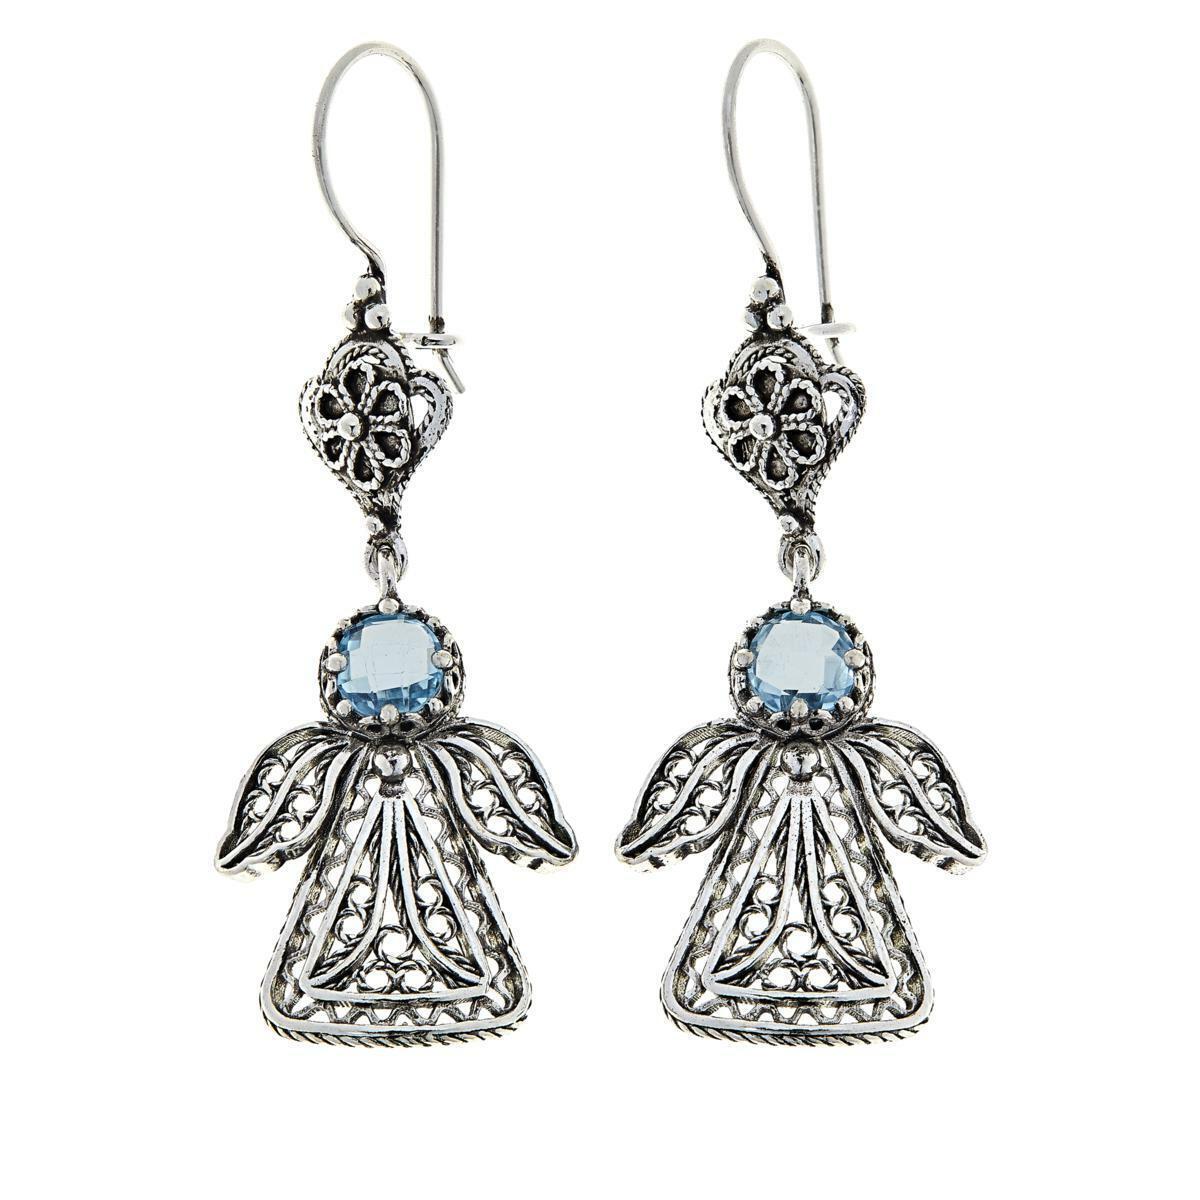 Ottoman Silver Jewelry Blue Topaz Floral Guardian Angel Drop Earrings